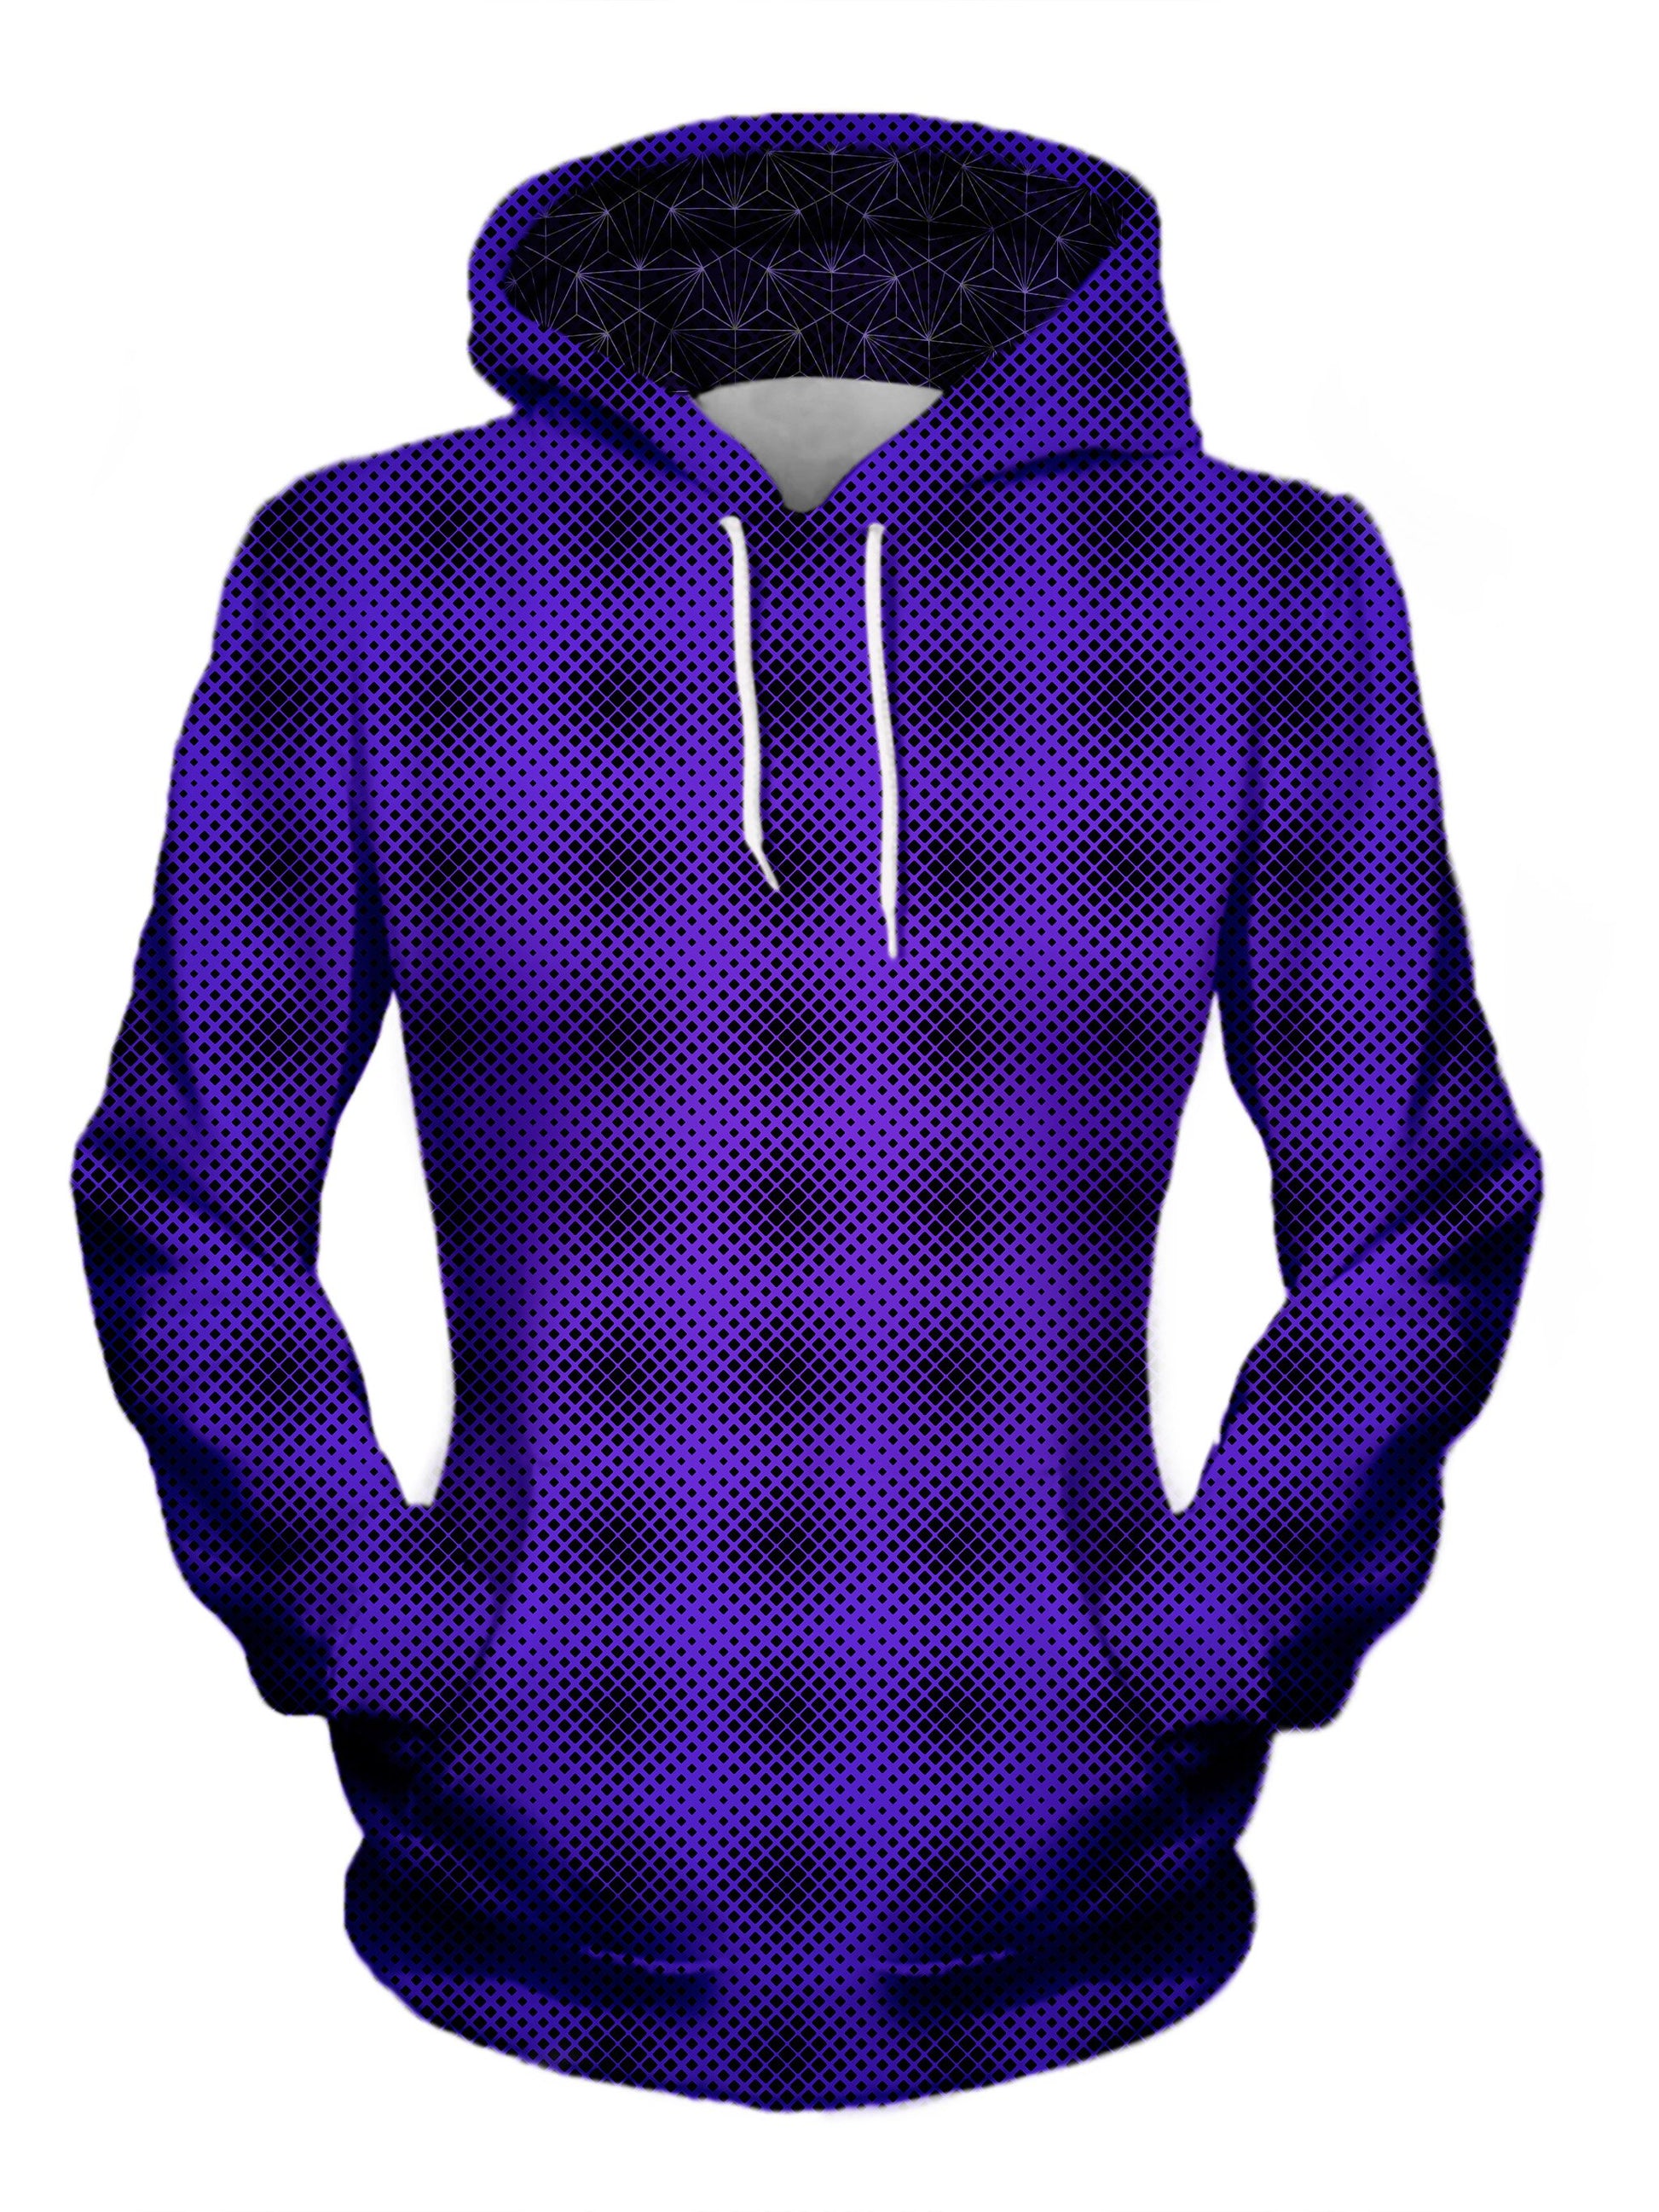 womens psychedelic hoodie - purple and pink pattern hoodie